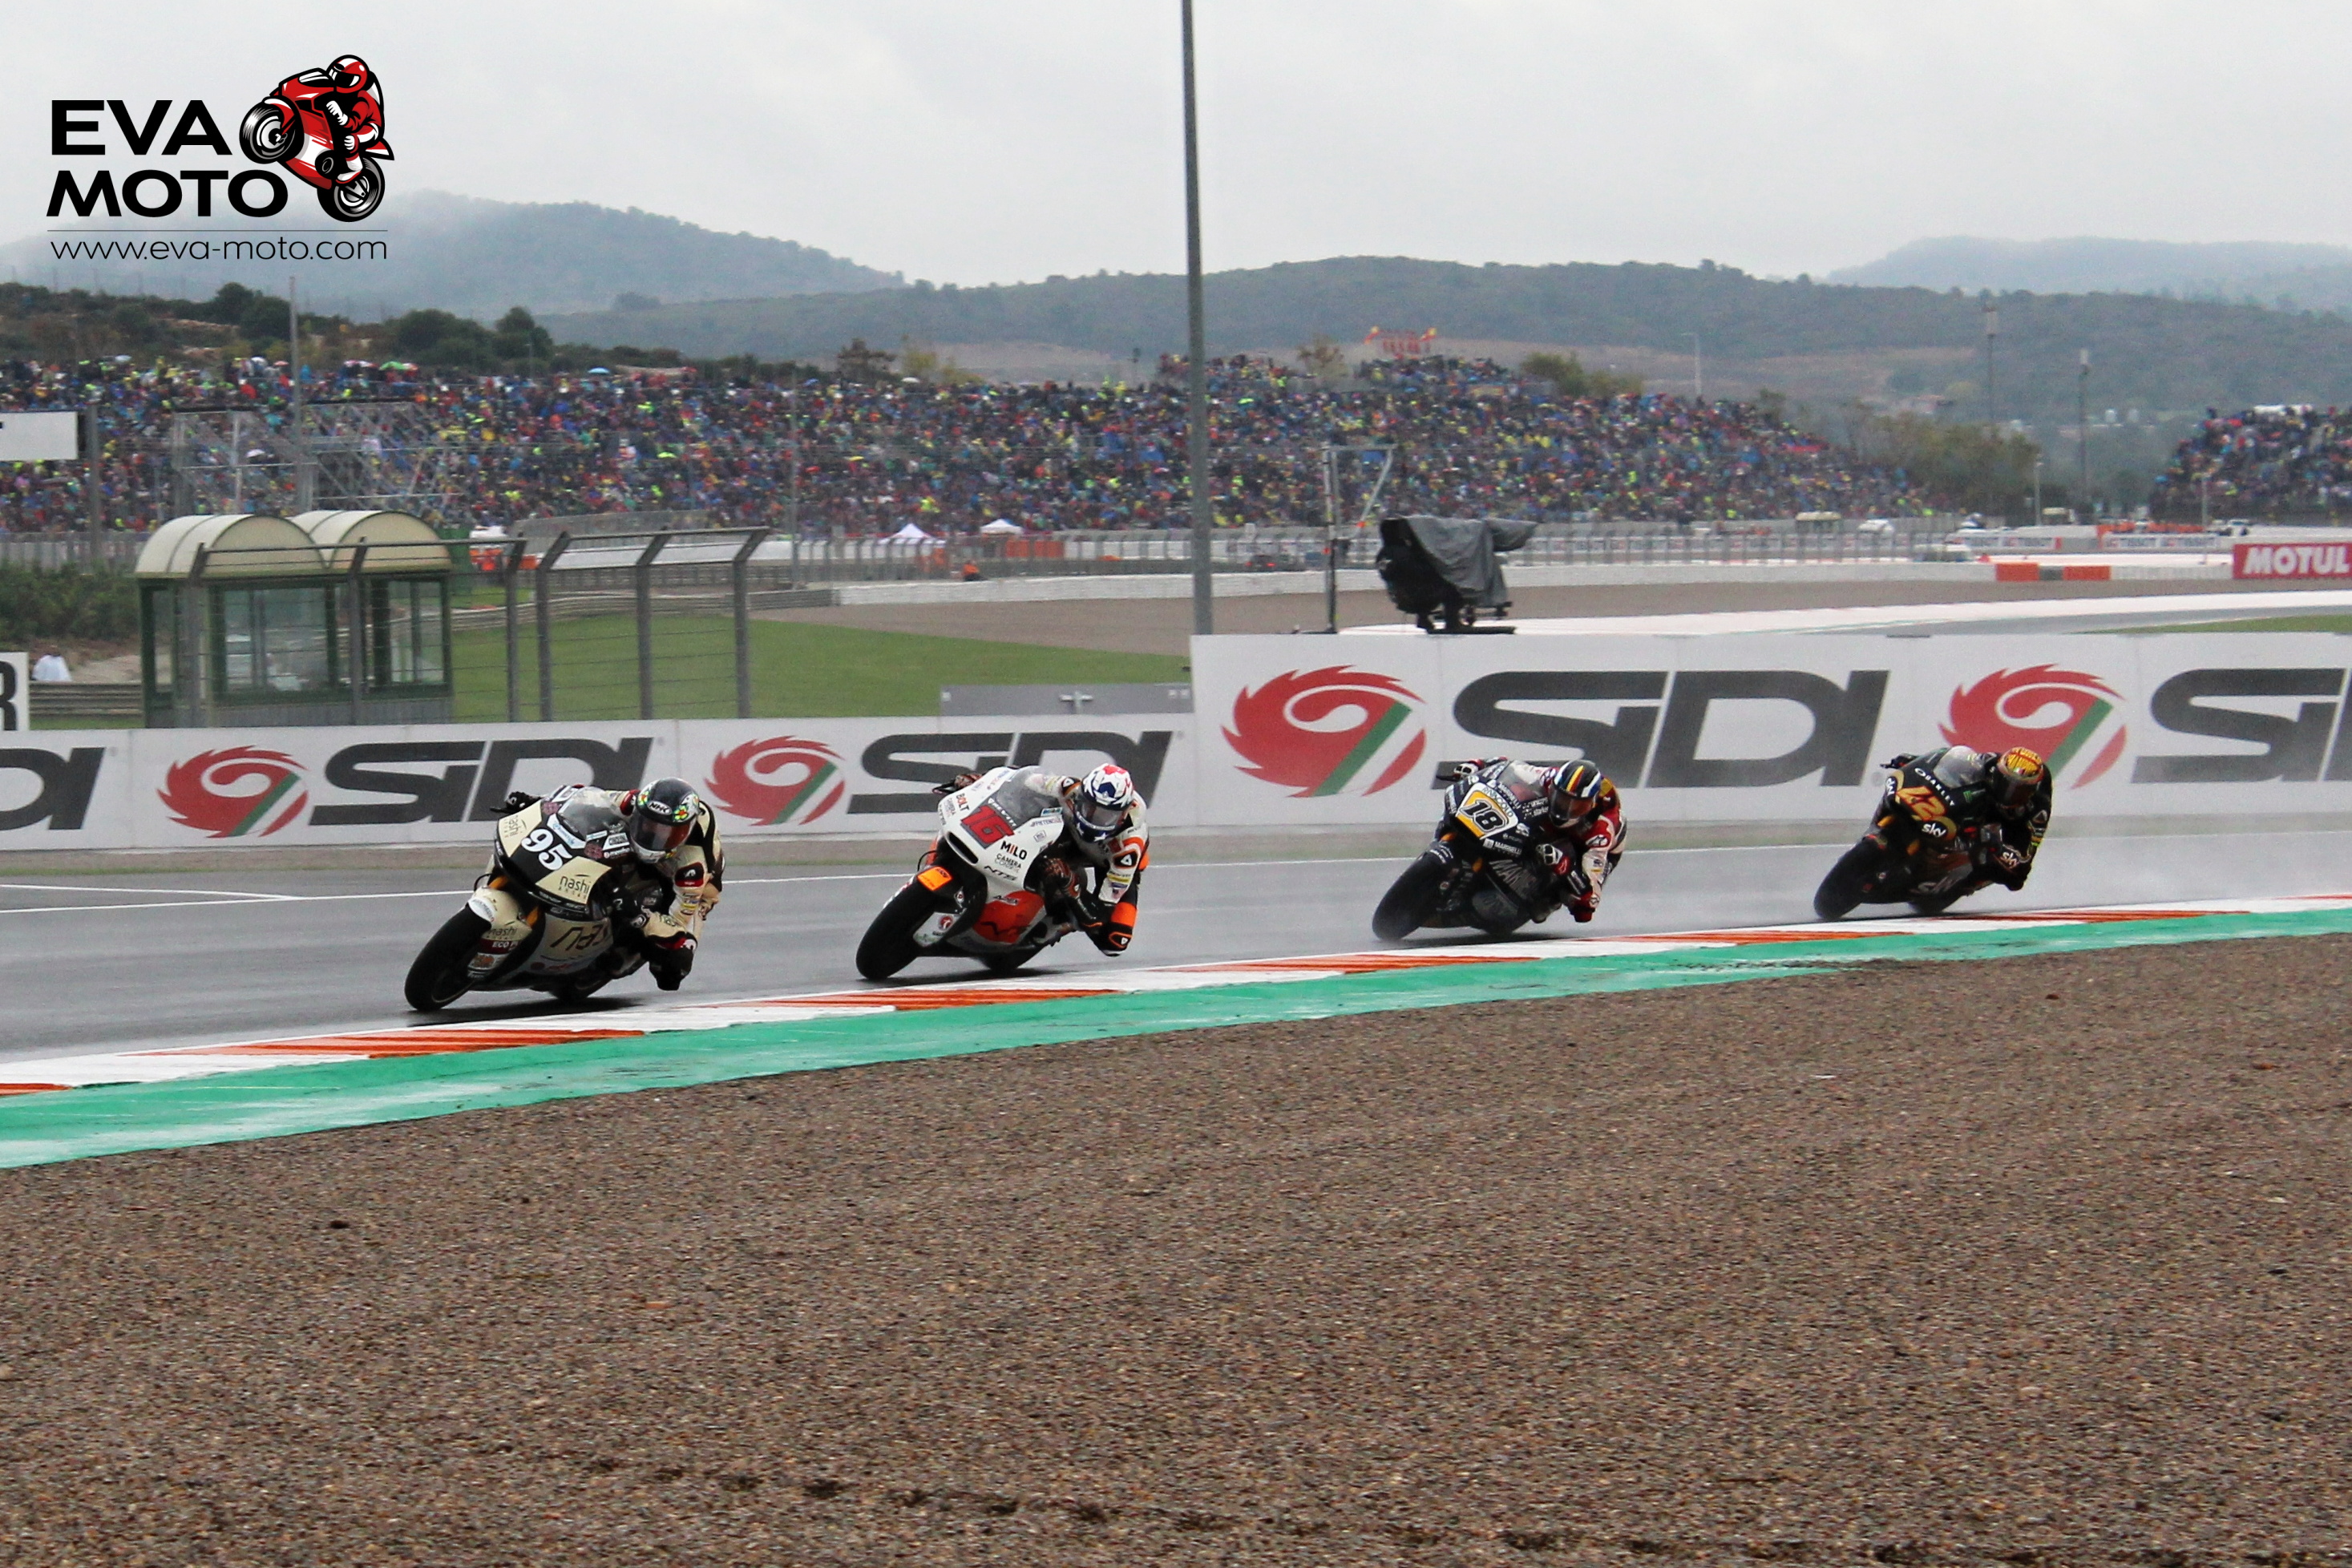 Moto3 a Moto2 budou mít od příští sezóny formát dvou kvalifikací